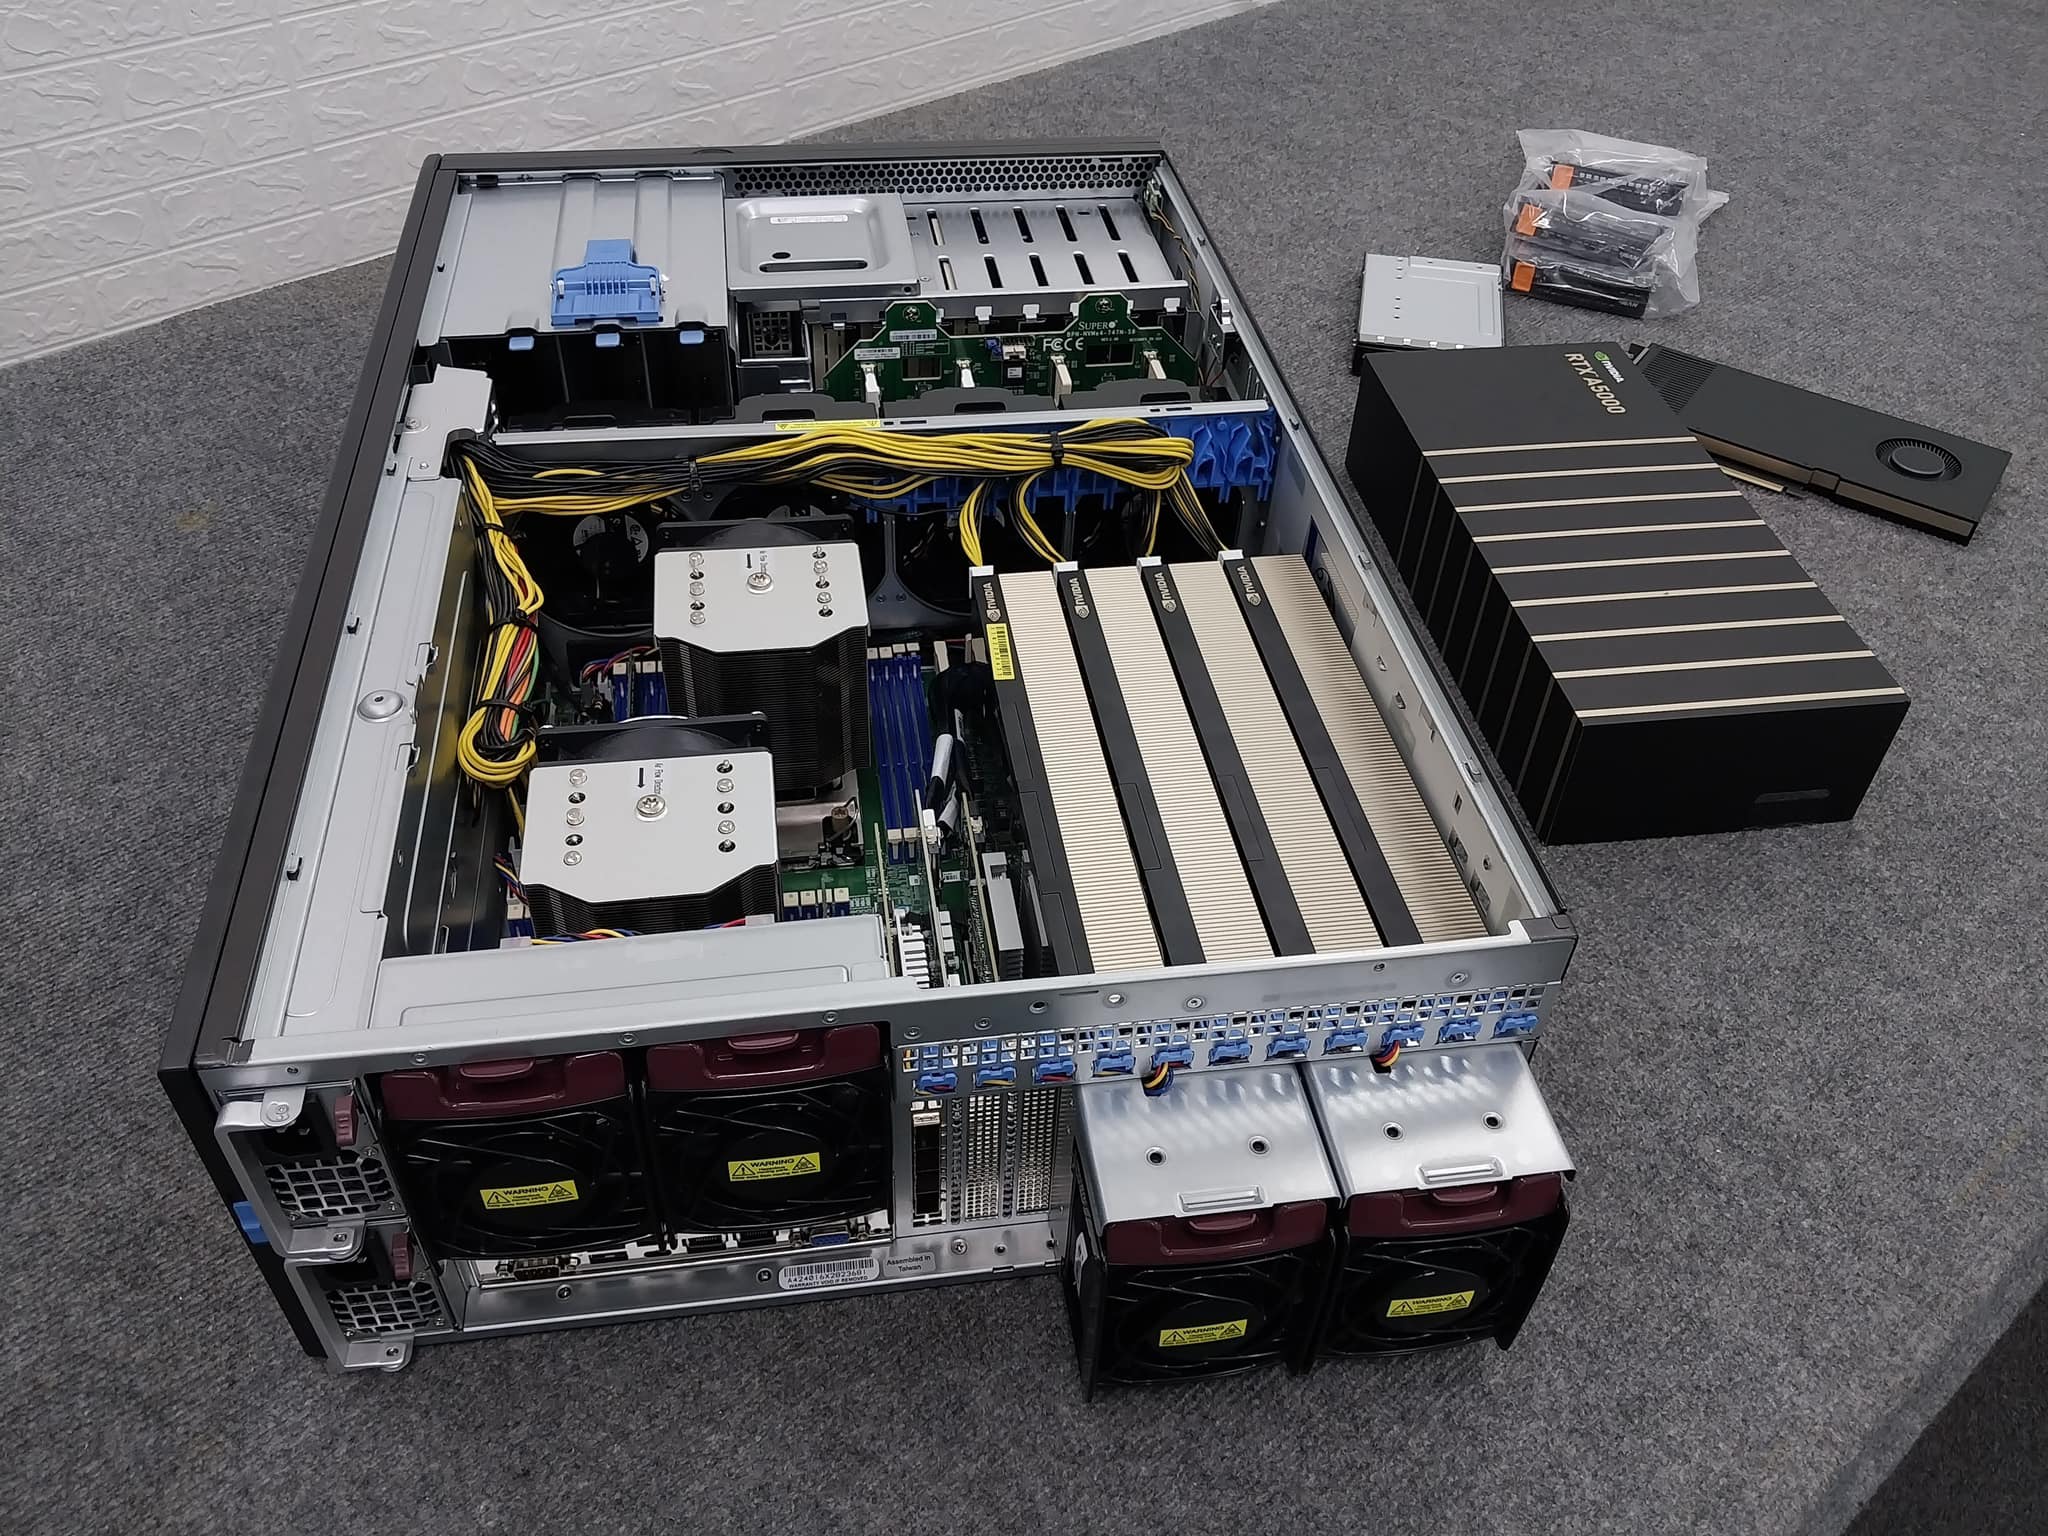 GPU SuperServer SYS-740GP-TNRT - hàng chính hãng